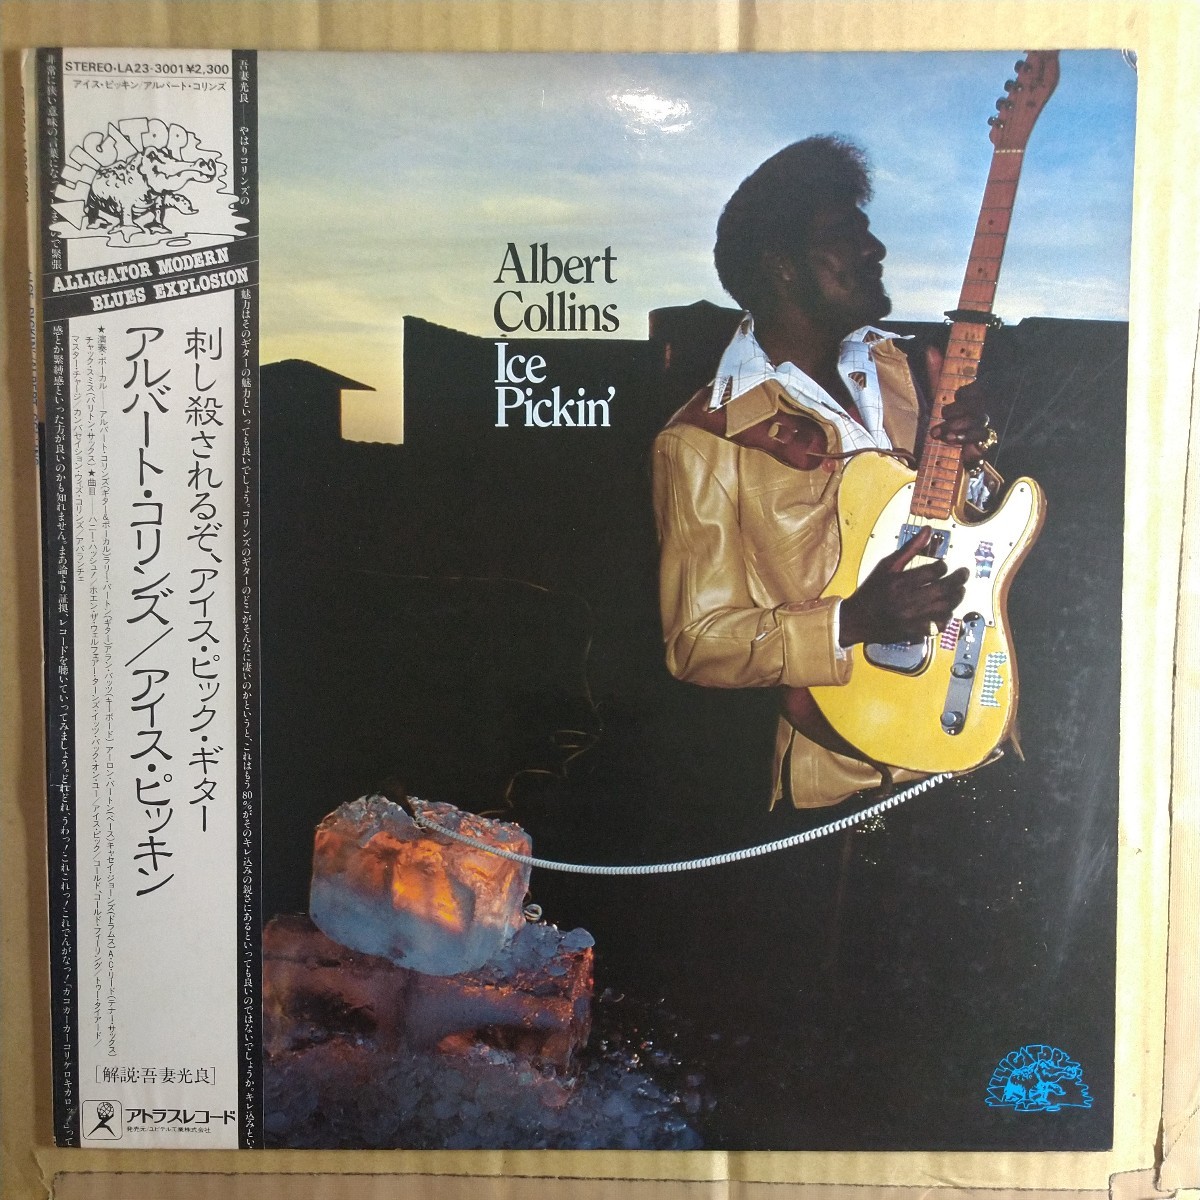 アルバート・コリンズ「Ice Pickin'」邦LP 1980年 絶版アトラスレコード盤★★texas blues名盤albert collins_画像1